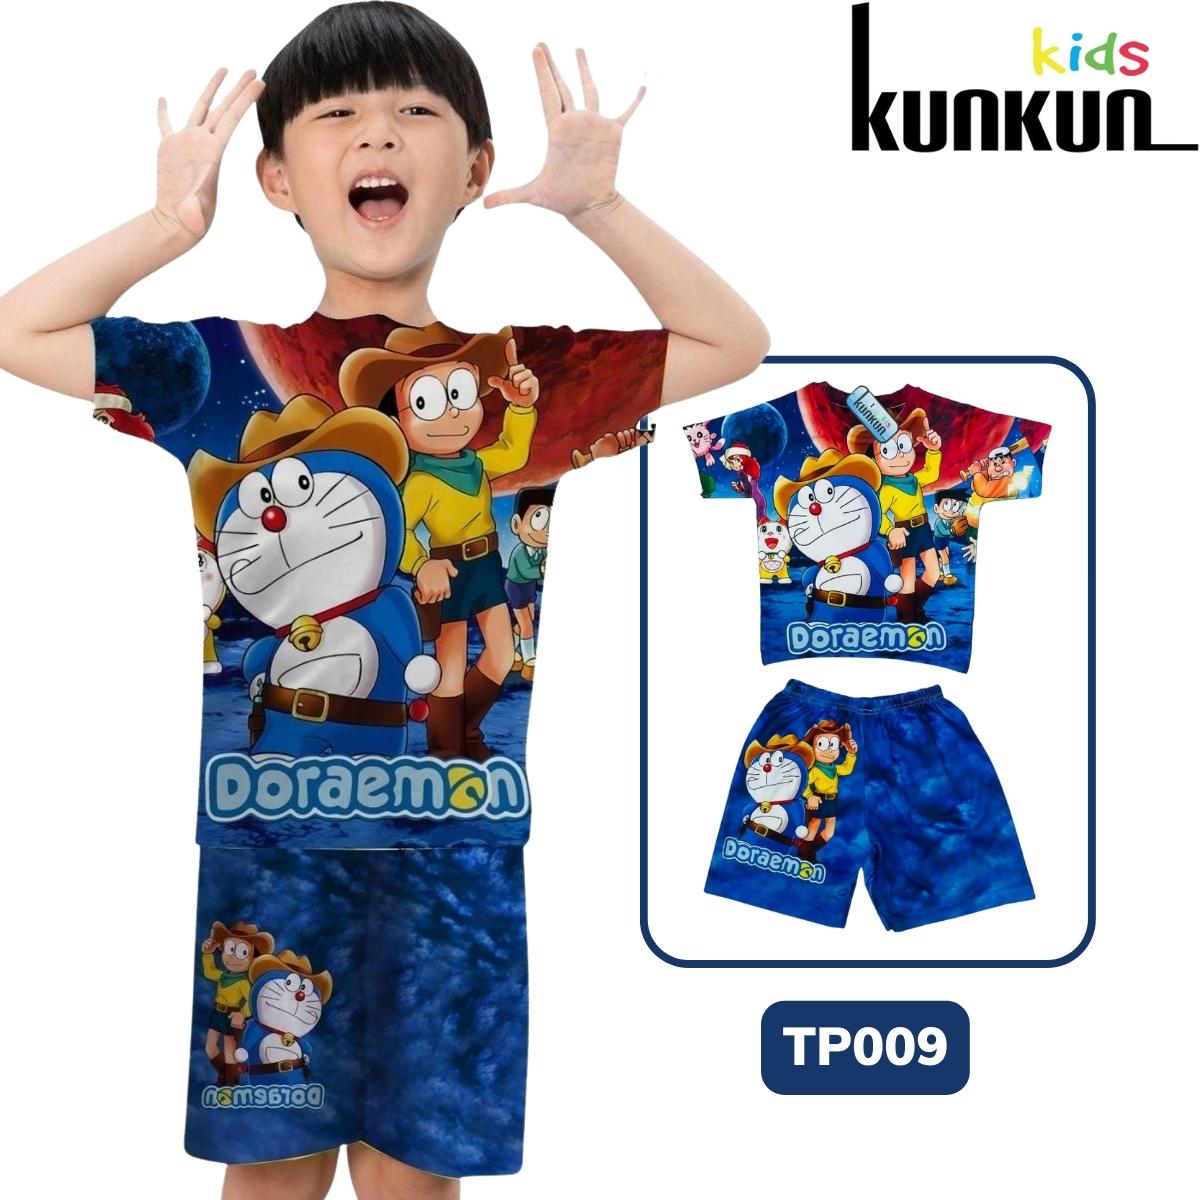 Quần áo bé trai Thun lạnh thoáng mát in 3D hoạt hình Doraemon Kunkun TP009 - Đồ bộ bé trai size đại cho bé từ 10kg - 60kg - Thời trang trẻ em cao cấp thumbnail